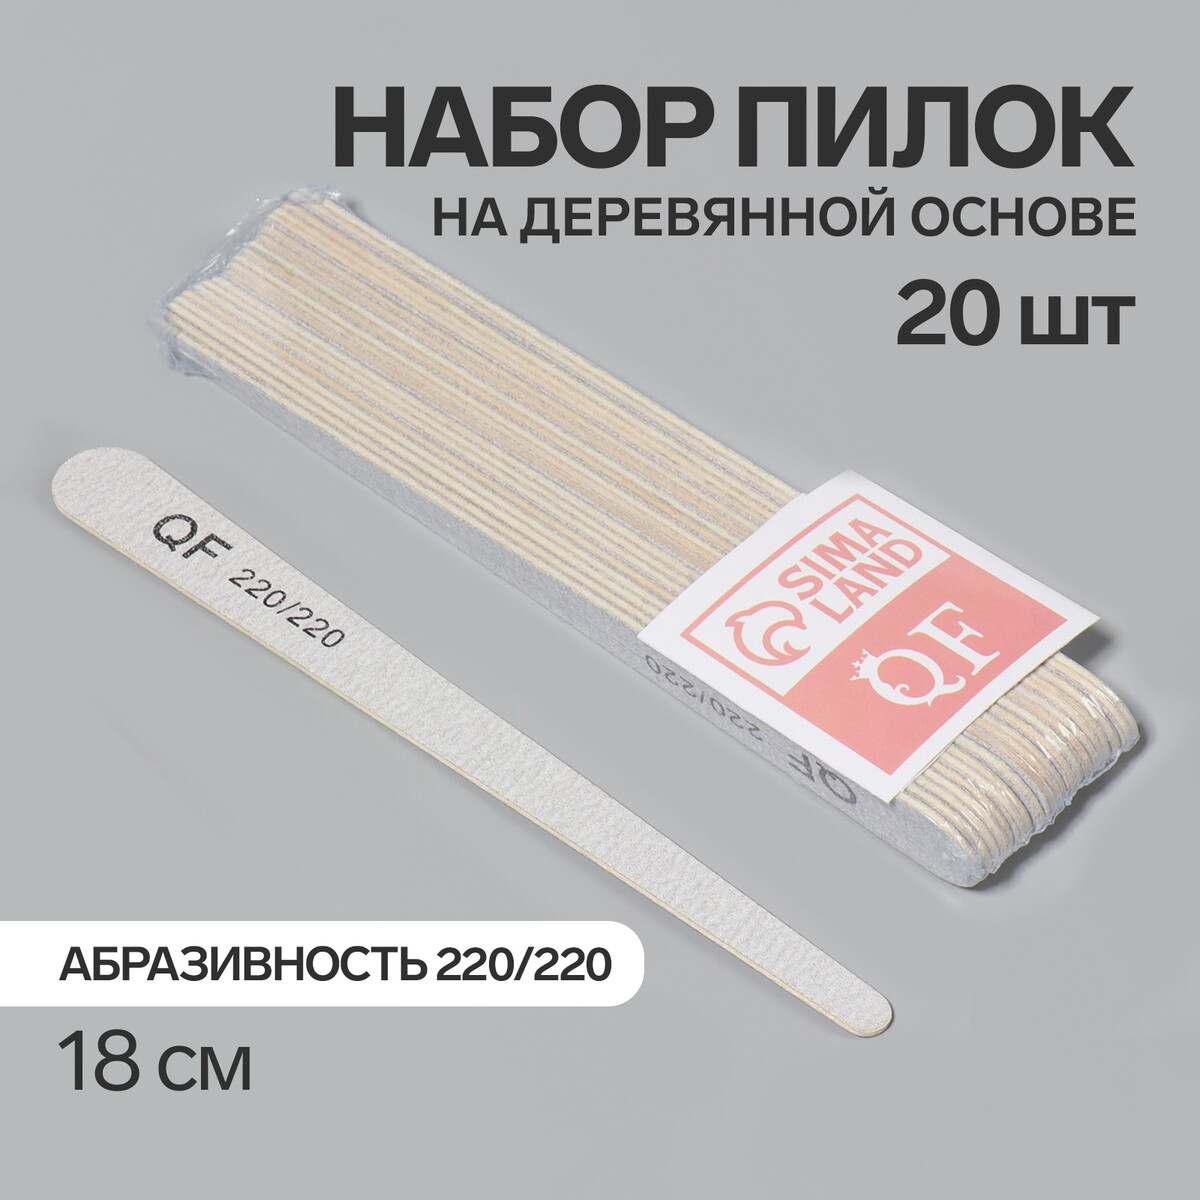 Пилка-наждак, набор 20 шт, деревянная основа, абразивность 220/220, 18 см, цвет серый палка основа для макраме деревянная без покрытия d 1 5 × 40 см